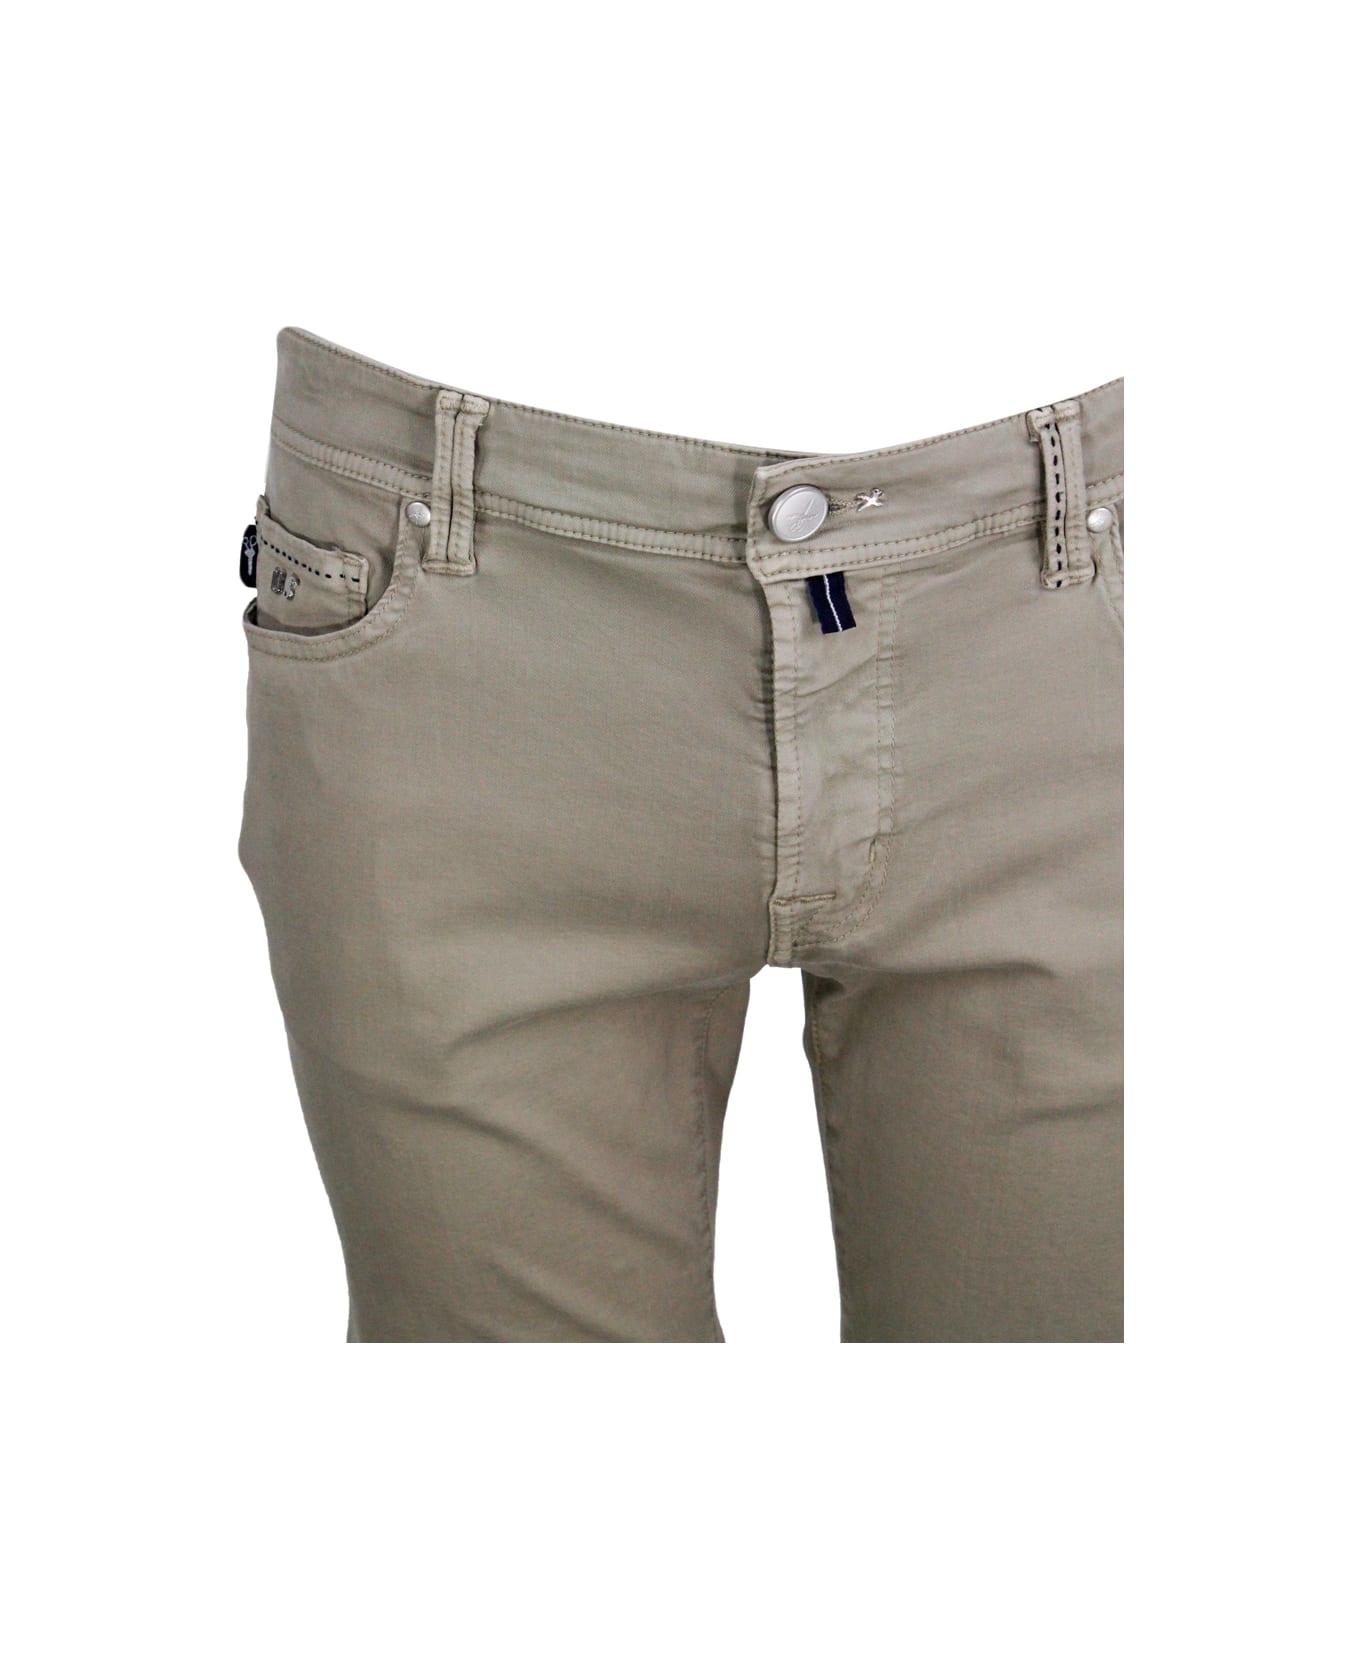 Sartoria Tramarossa Ascanio Slim Bermuda Shorts In Super Stretch Cotton Gabardine With 5 Pockets And Tailored Stitching - Sand Beige